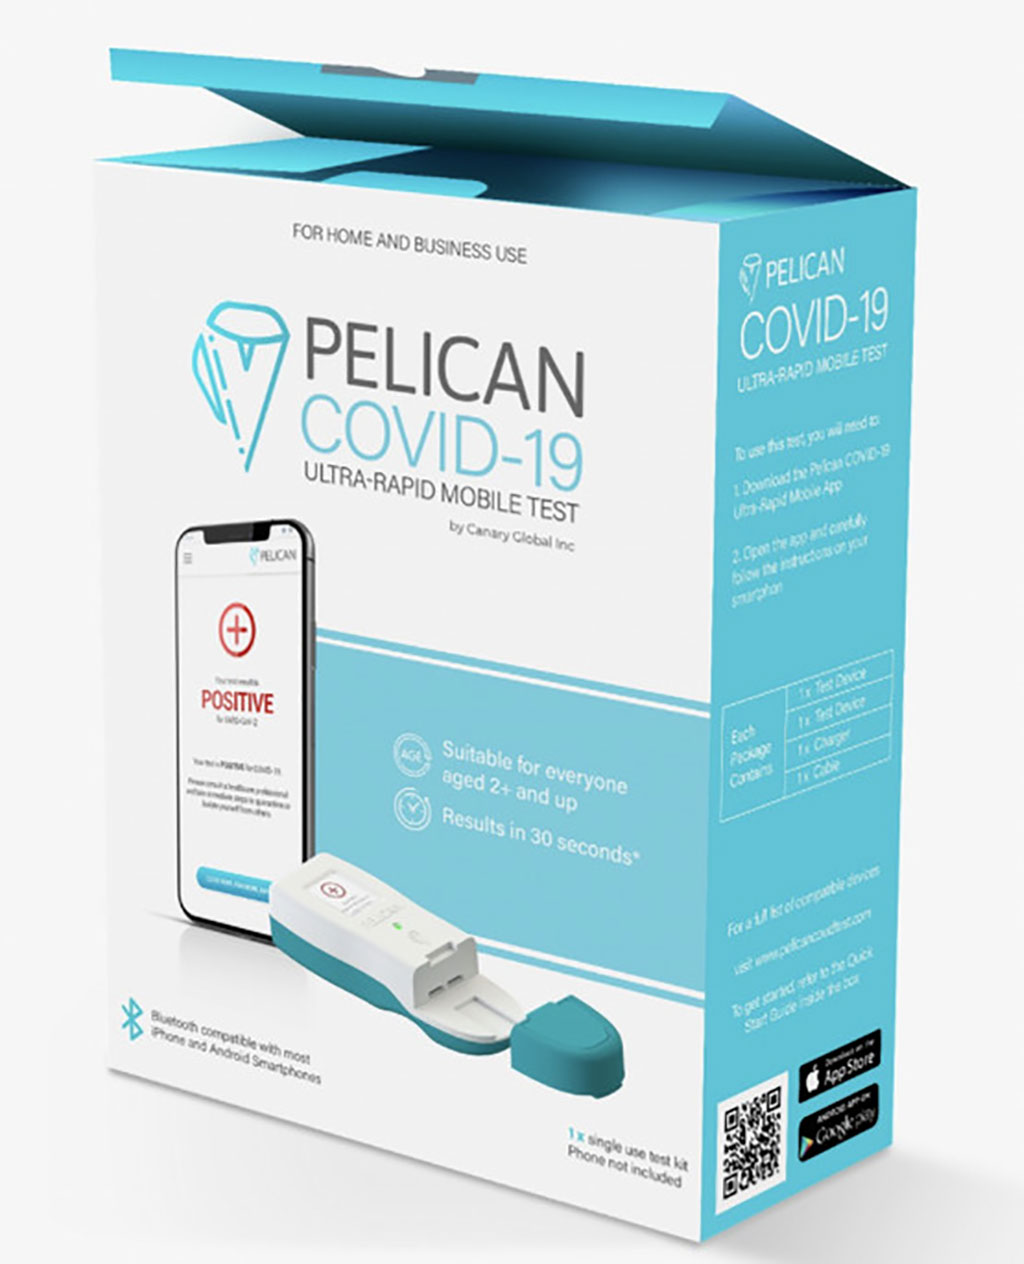 Imagen: Prueba móvil ultrarrápida Pelican COVID-19